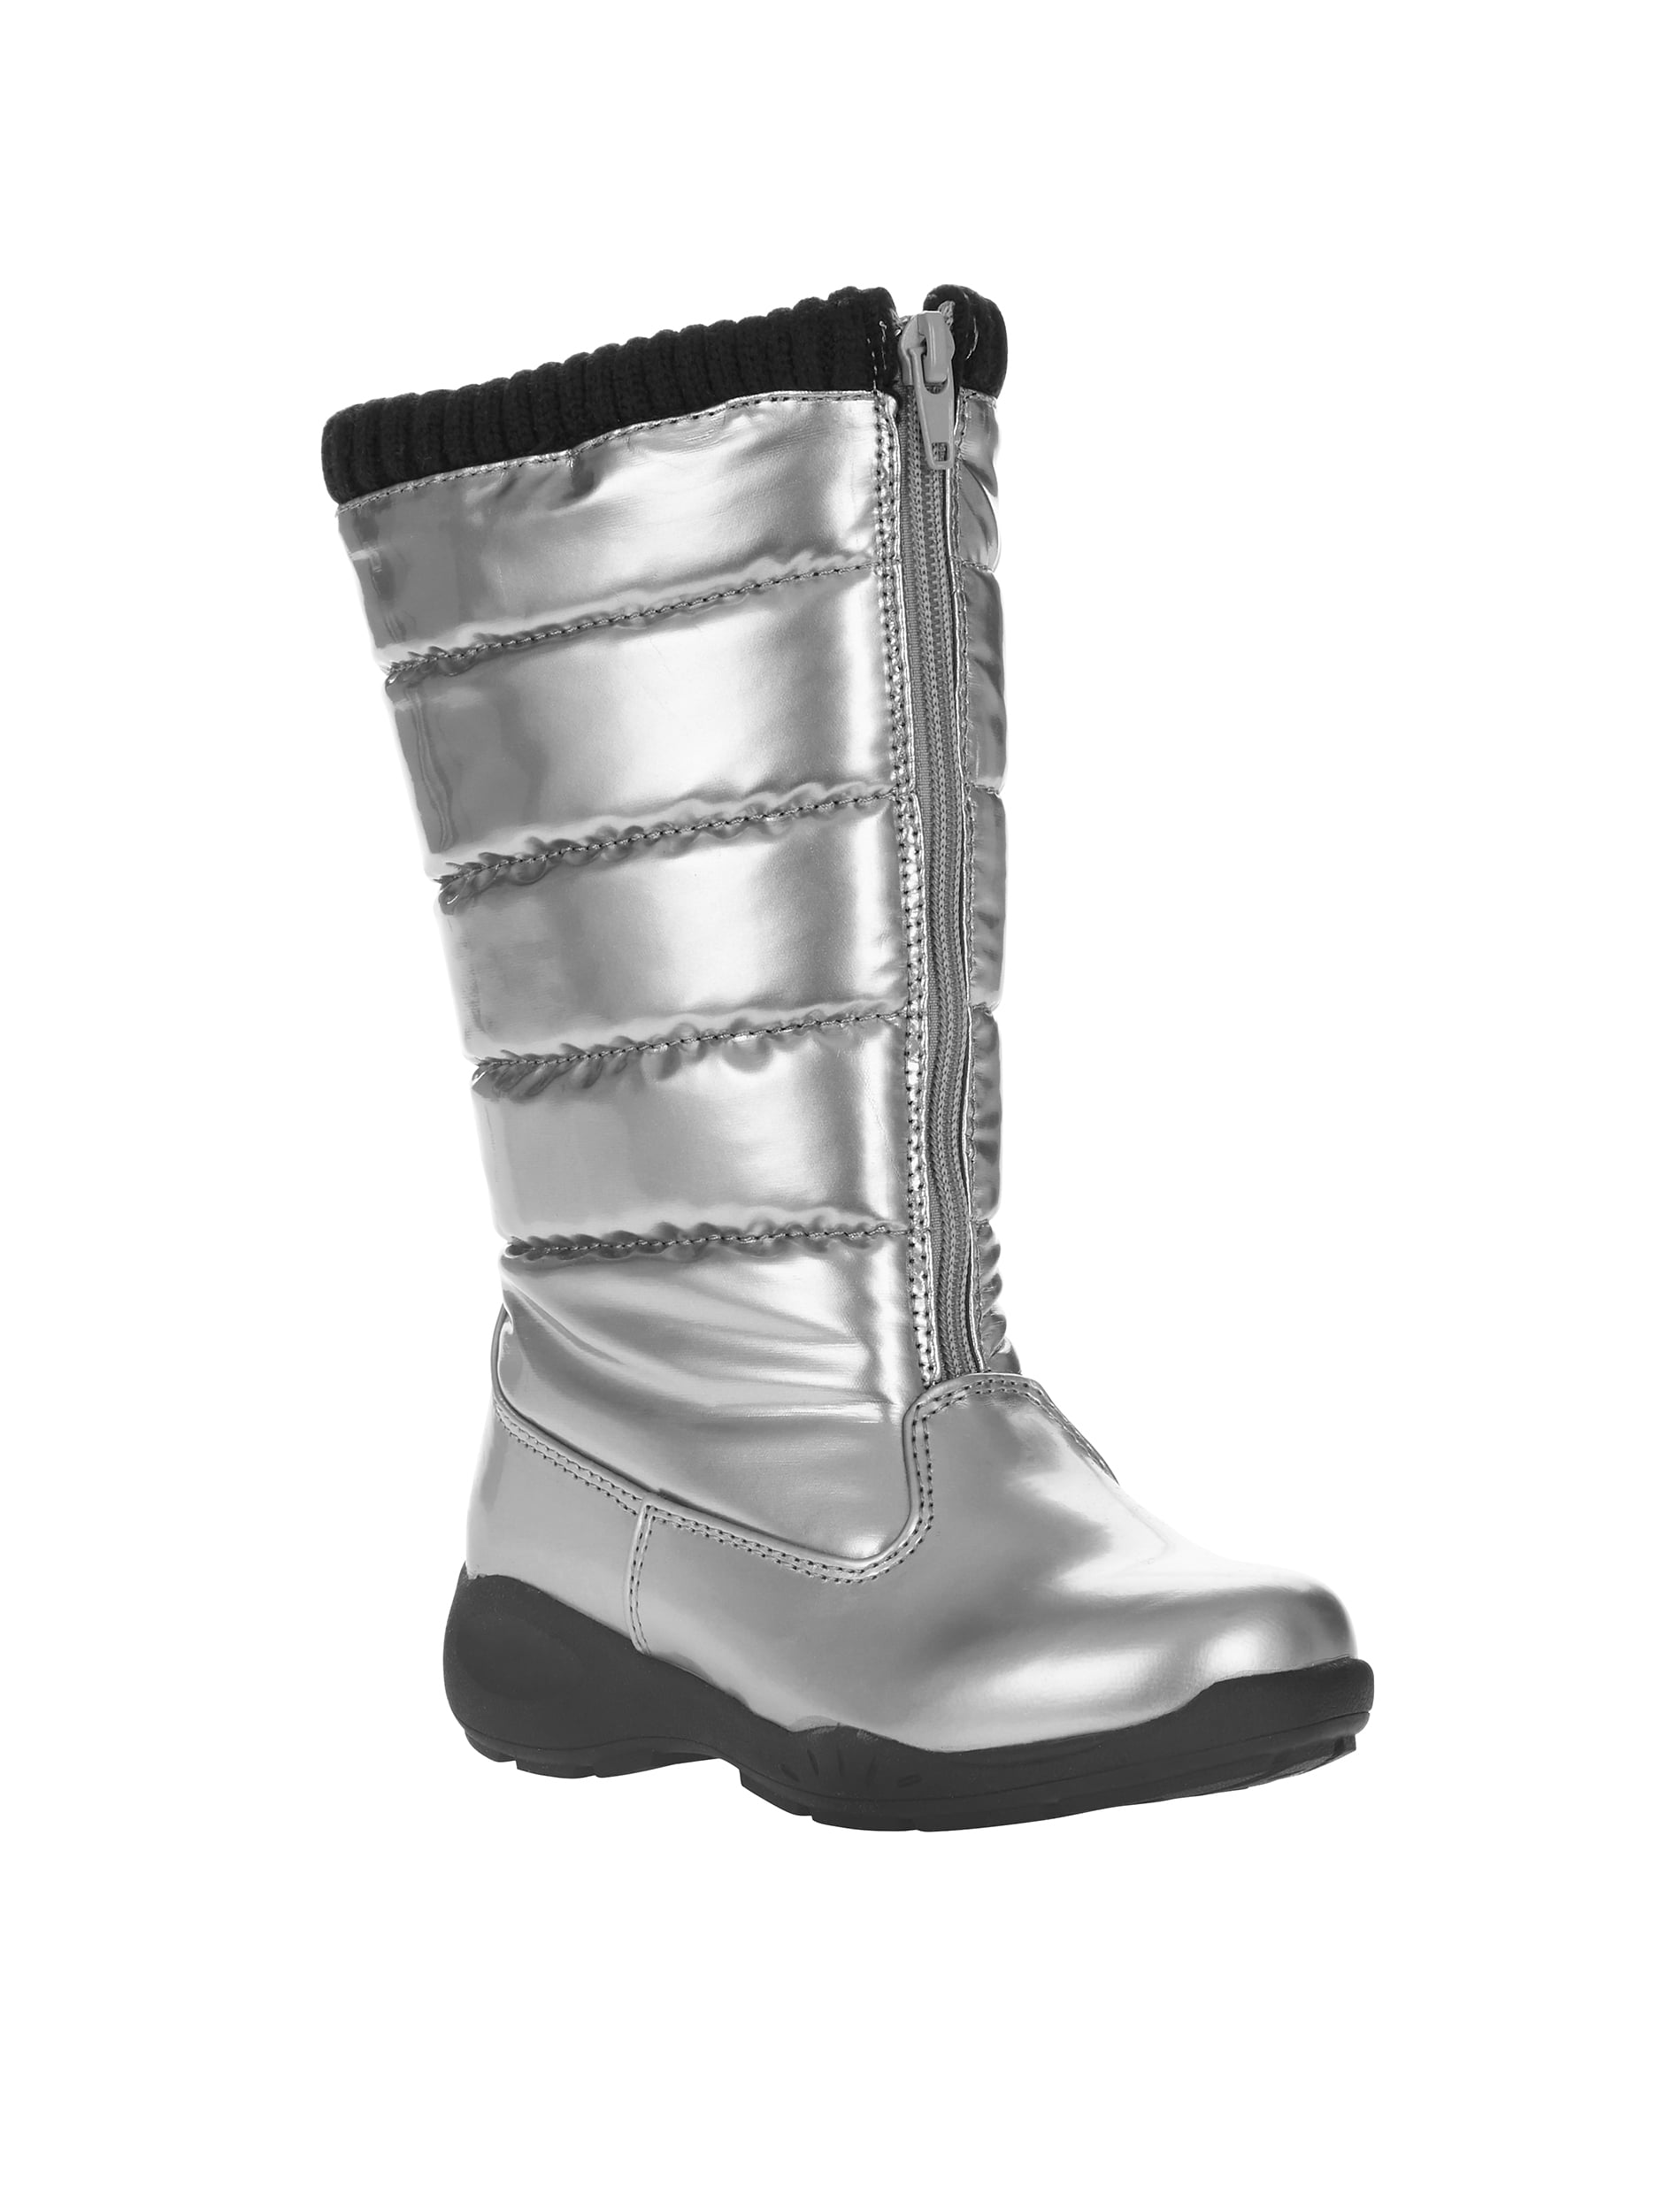 Buy > walmart girls black boots > in stock